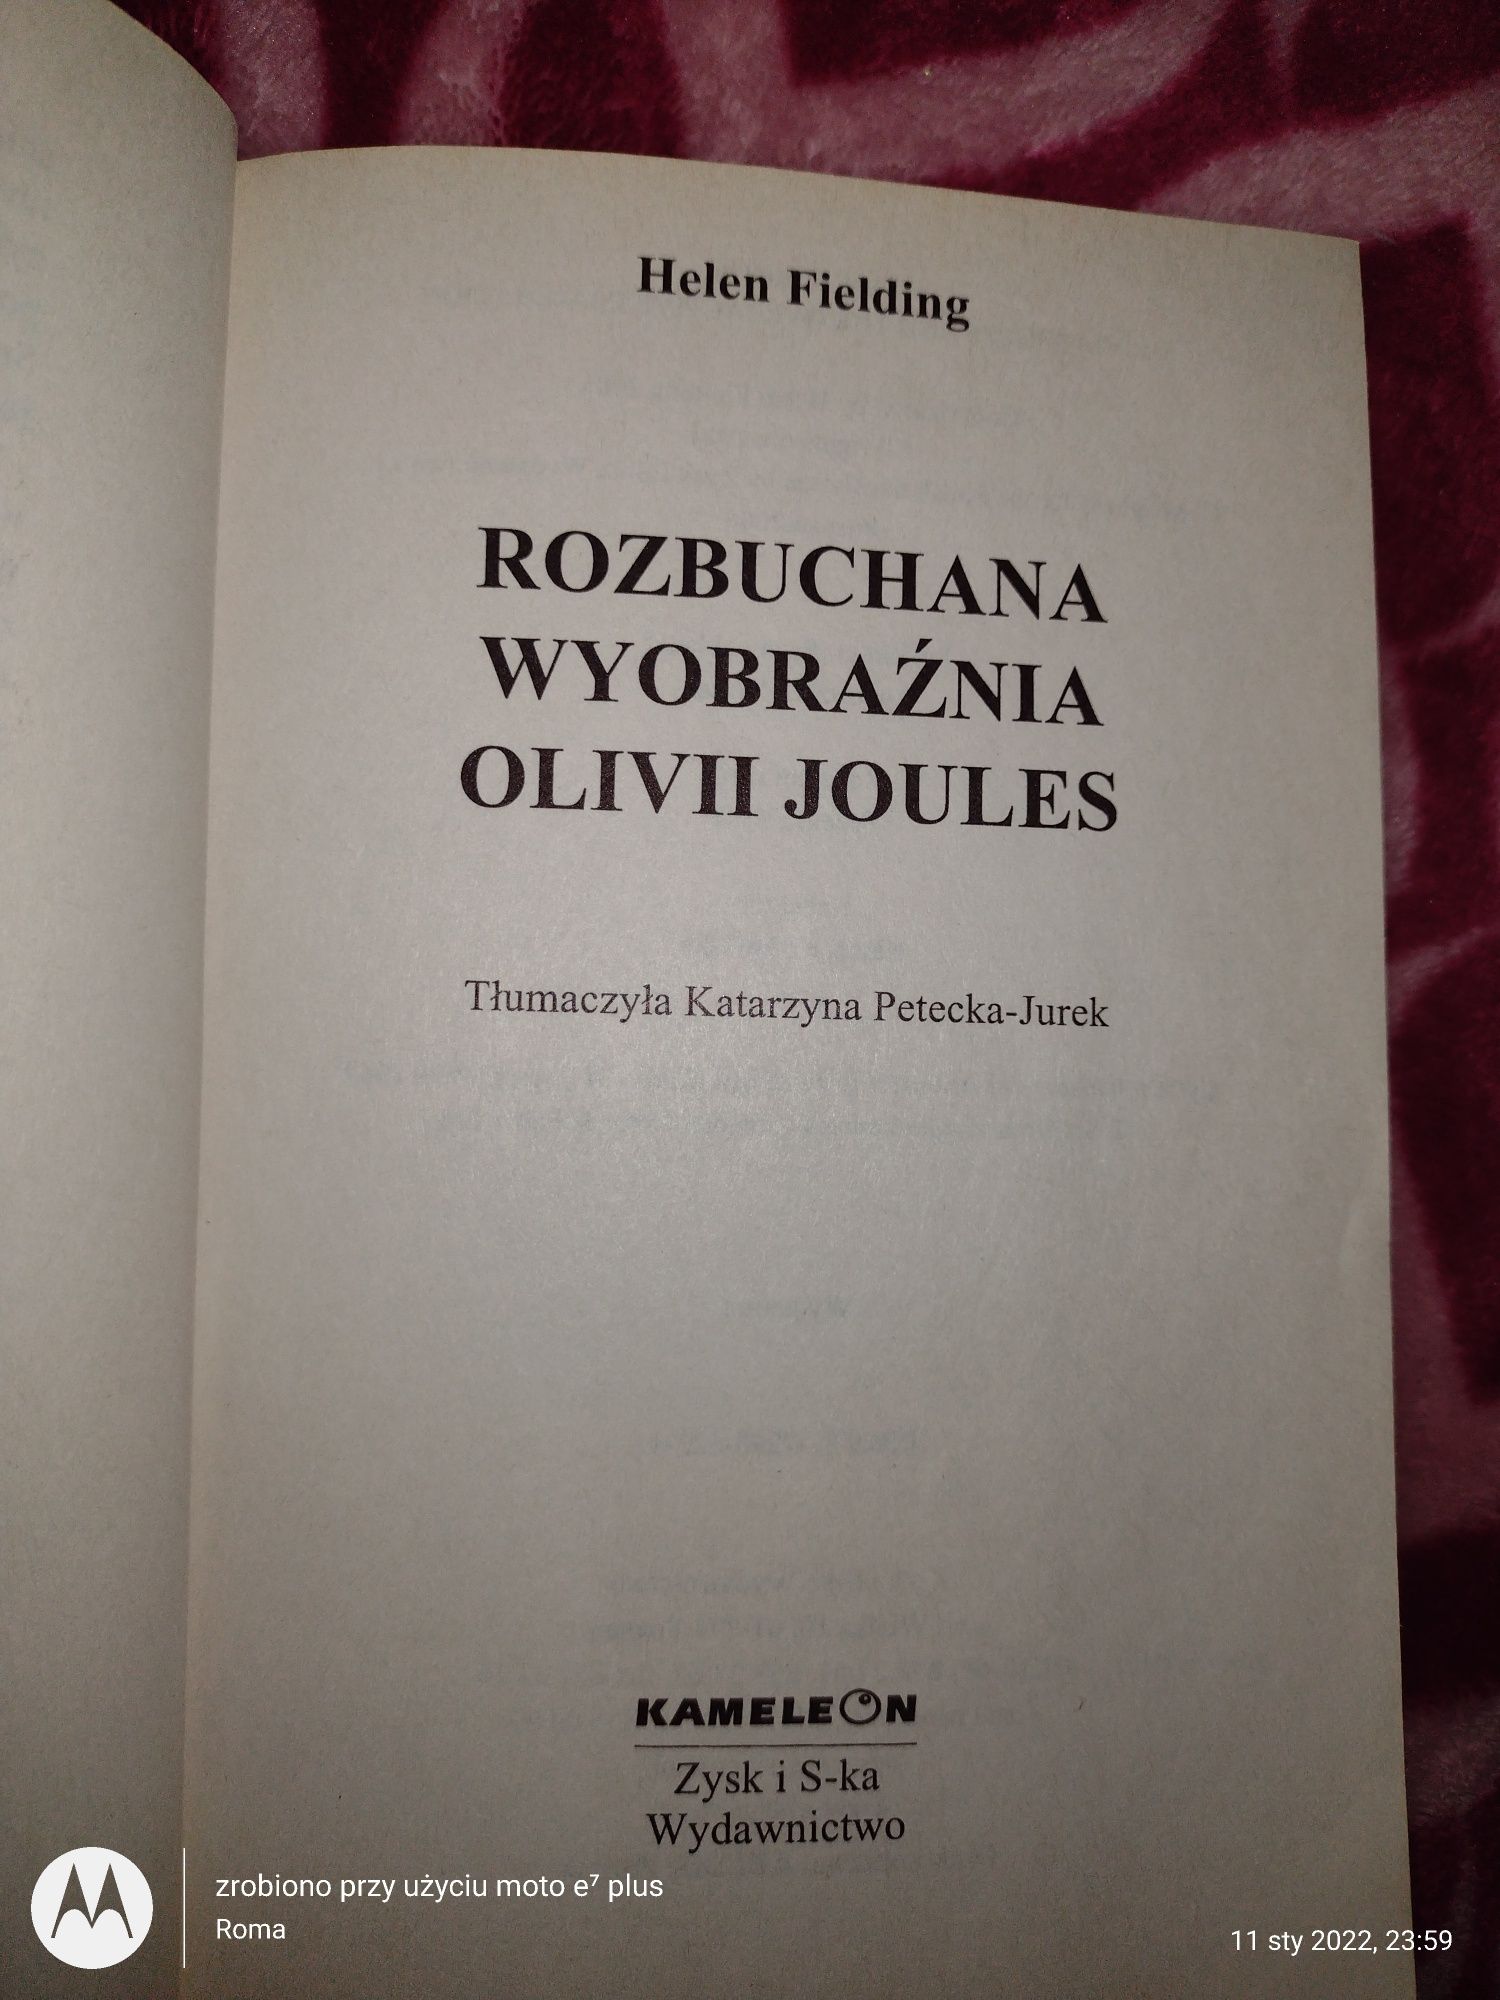 Książka pt" Rozbuchana wyobraźnia Olivii Joules"  Helen Fielding